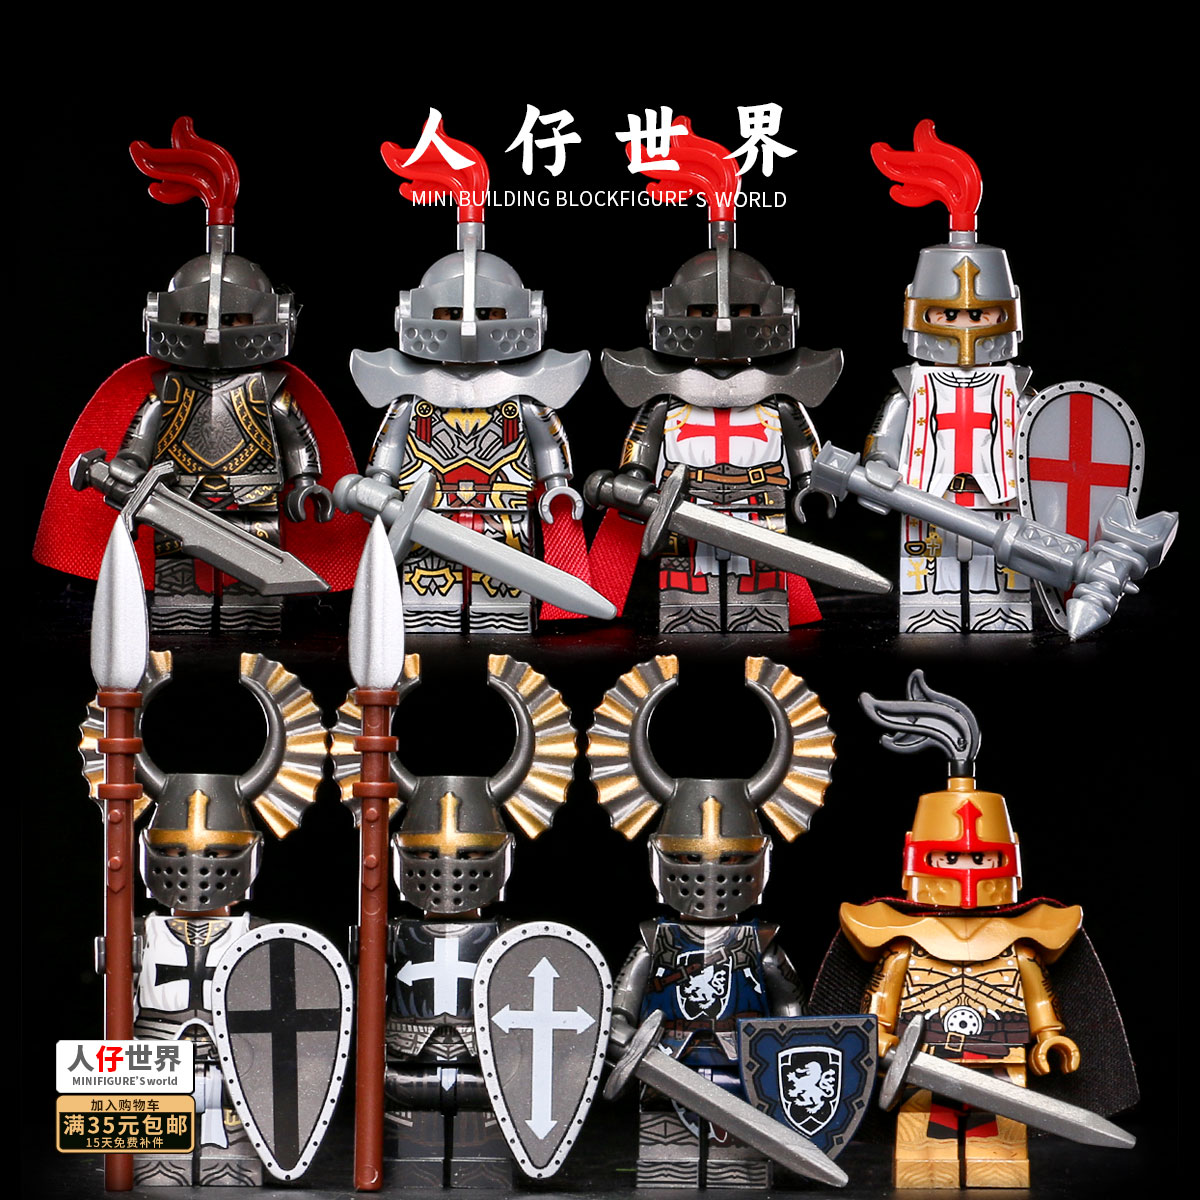 中世纪十字军圣殿骑士积木人仔铠甲头盔士兵军事男孩玩具塑料小人